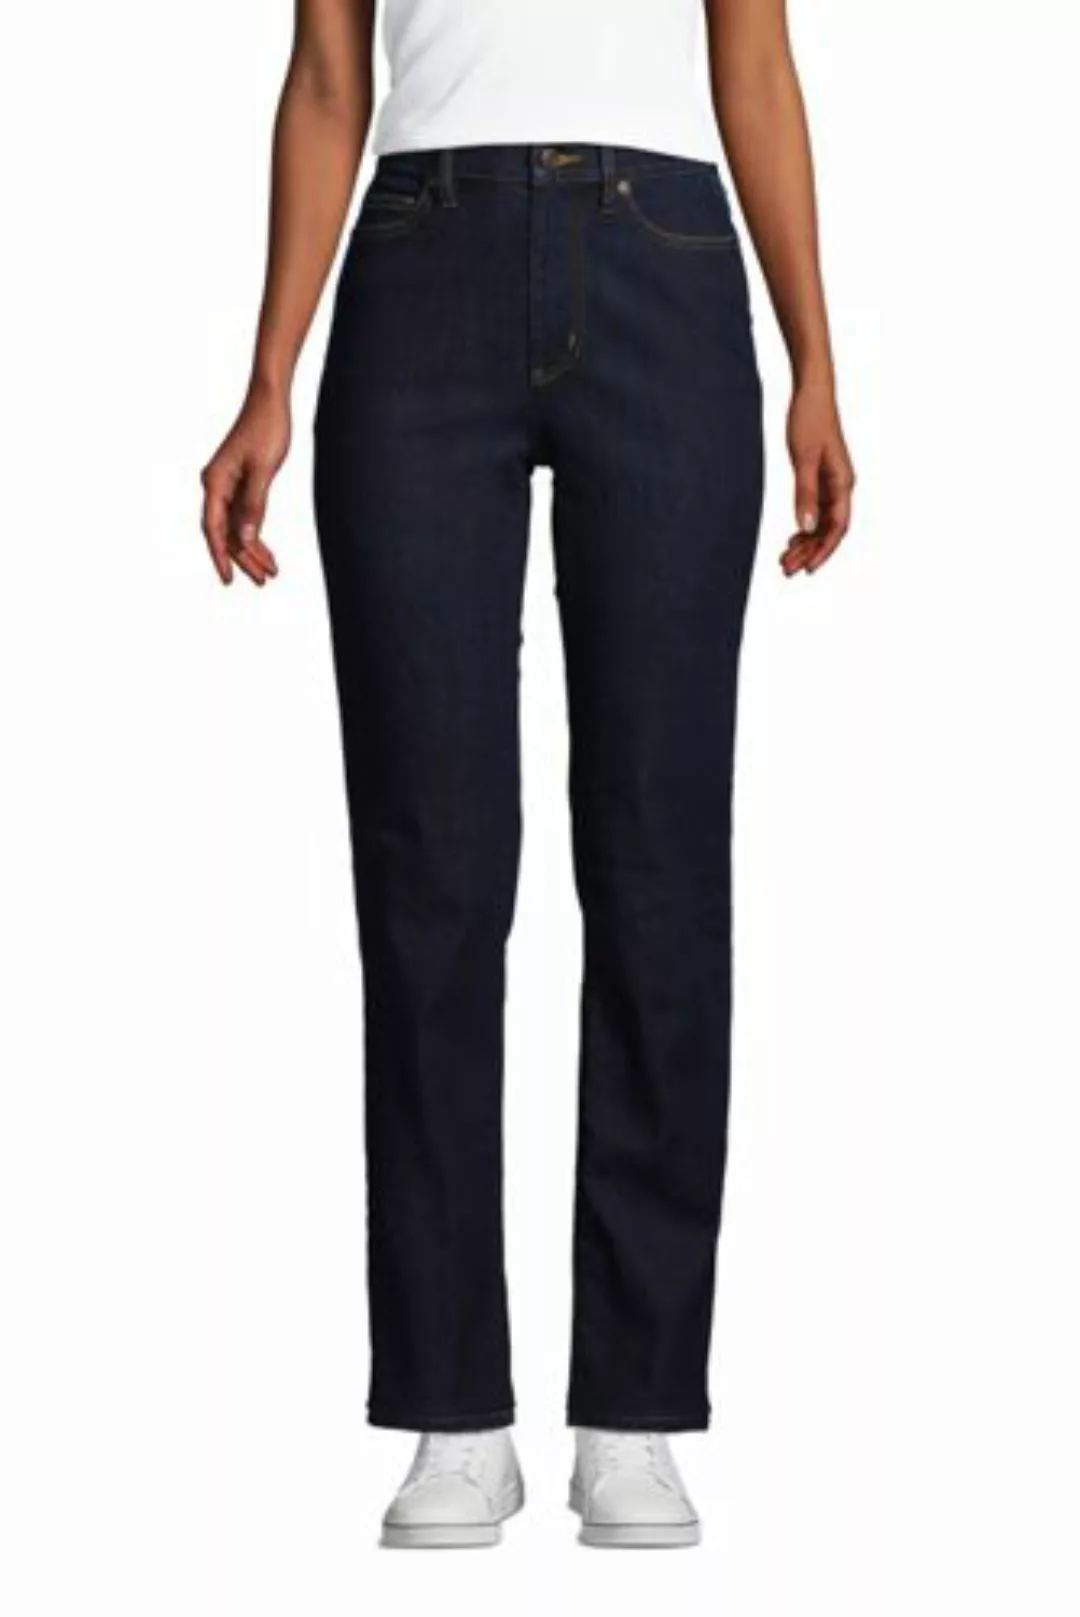 Straight Fit Öko Jeans High Waist in Petite-Größe, Damen, Größe: 38 28 Peti günstig online kaufen